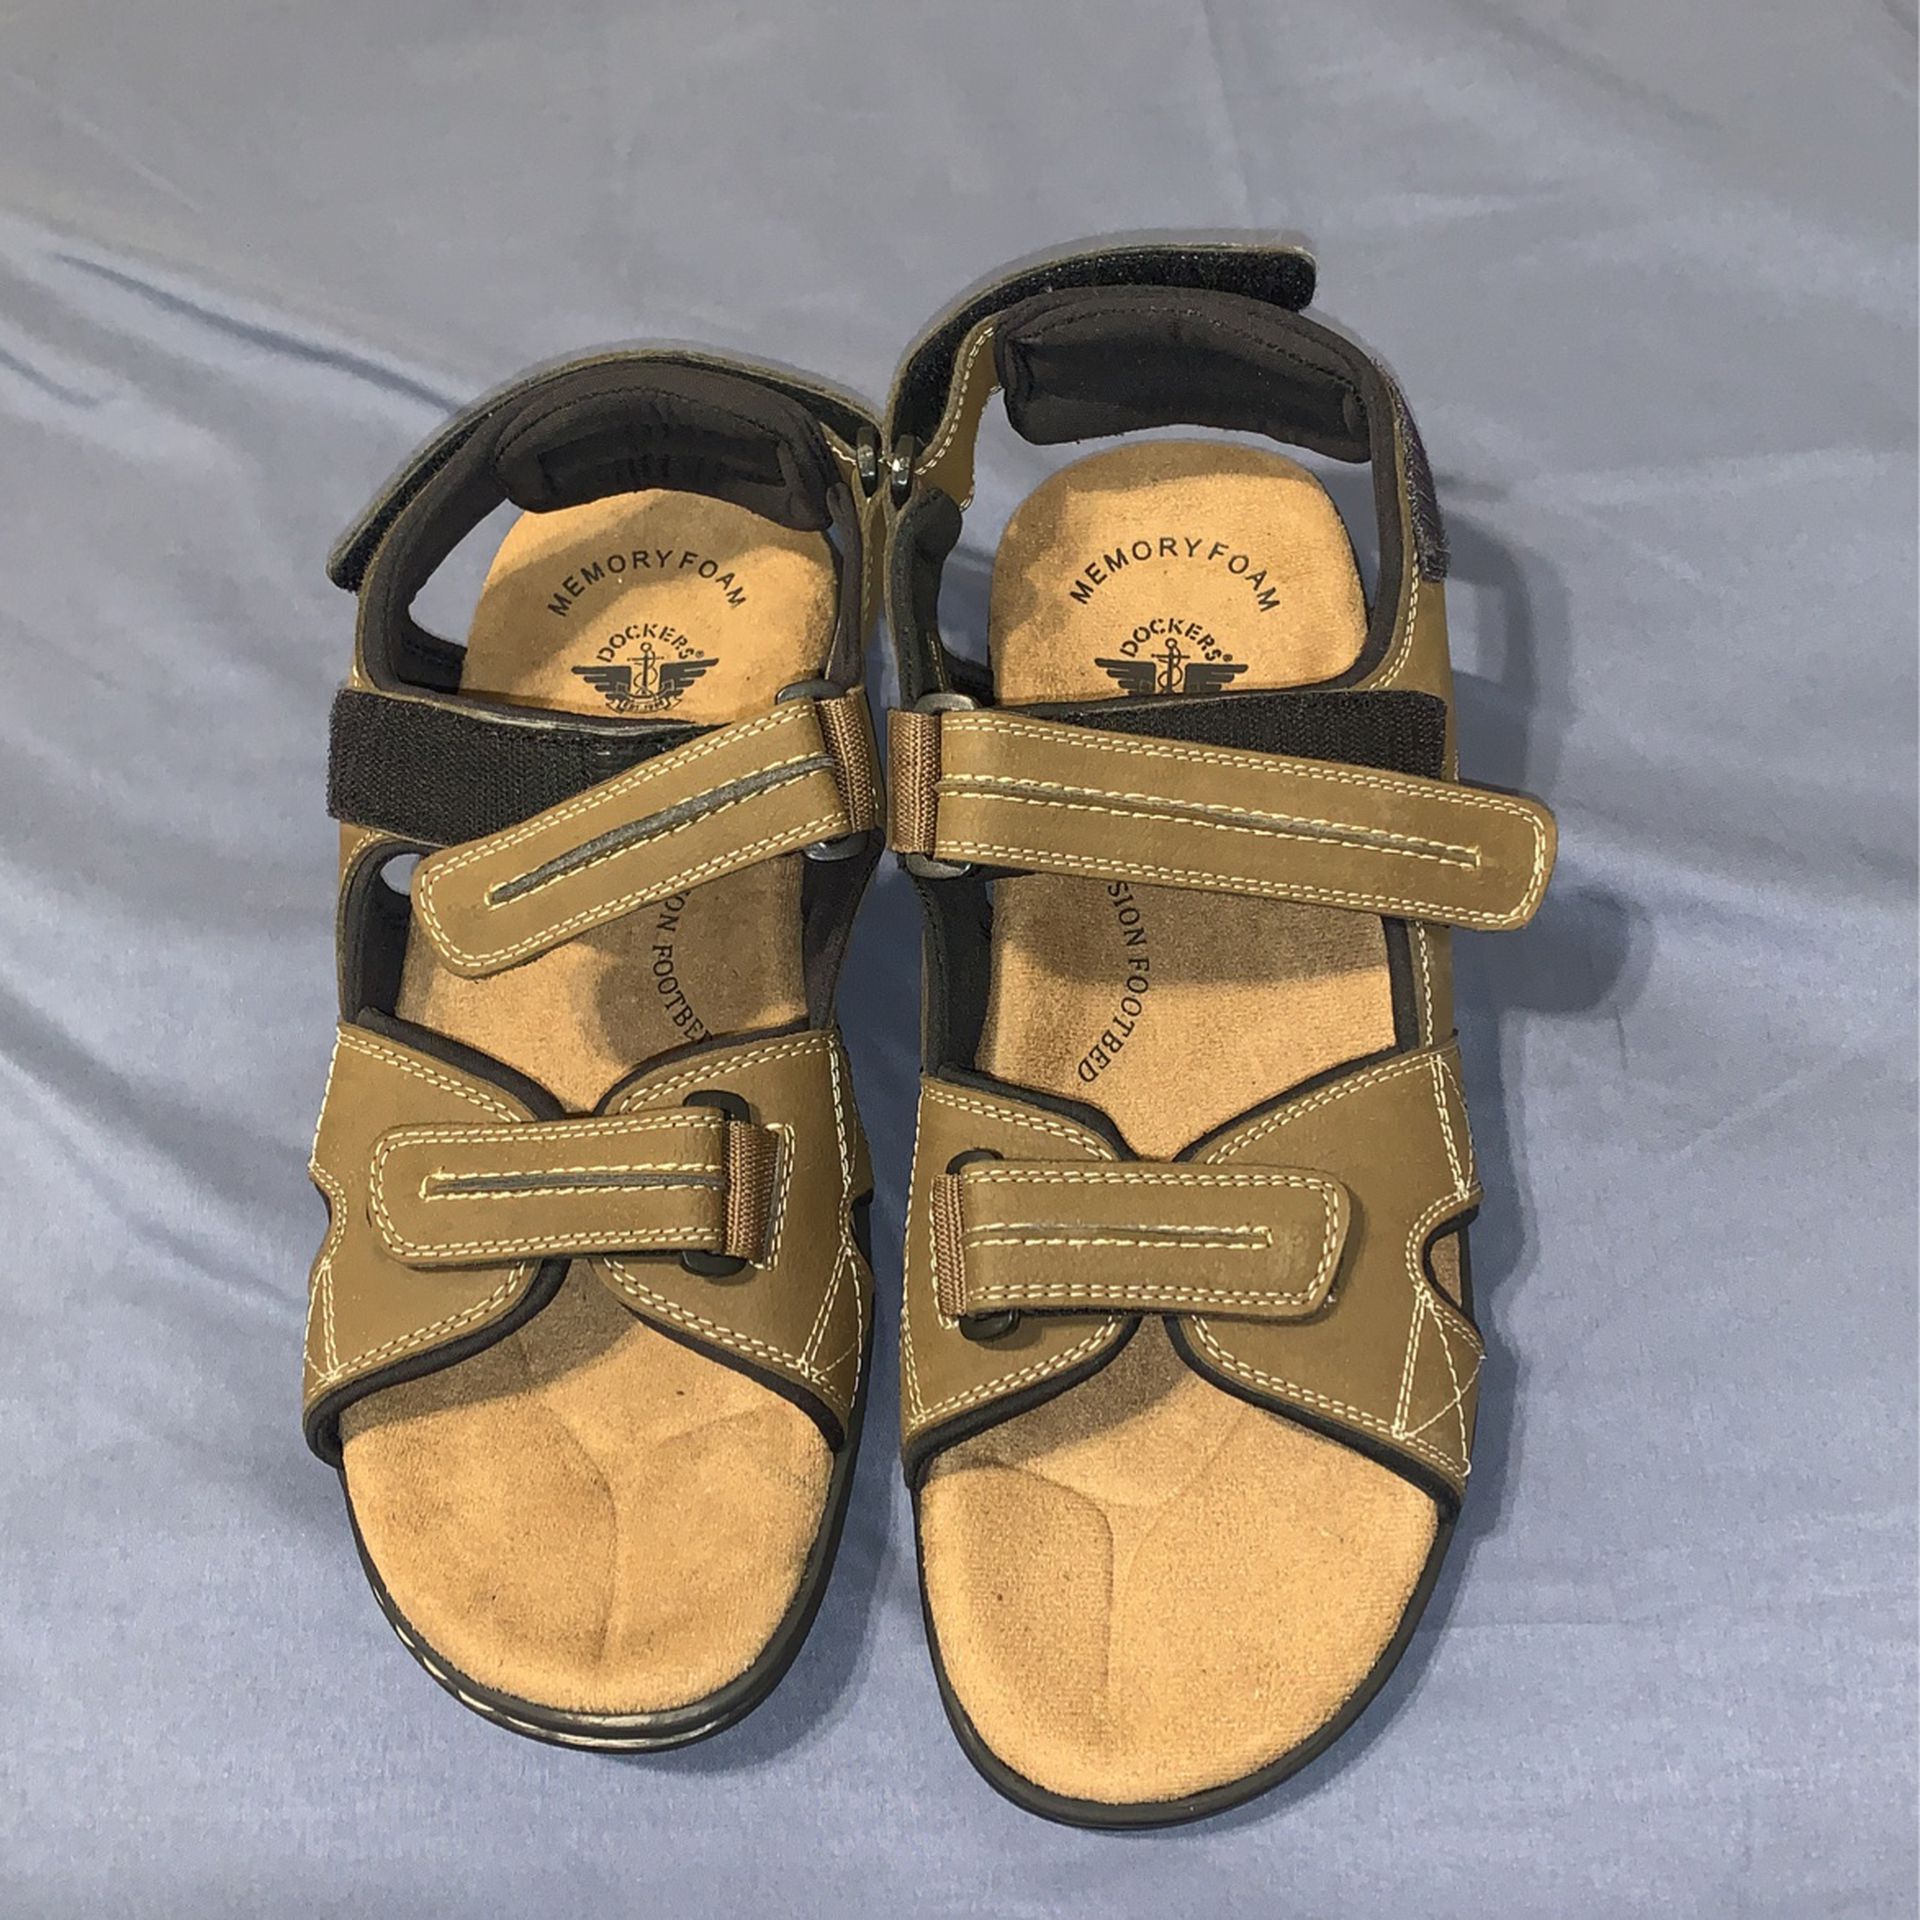 Men’s Docker Sandals 